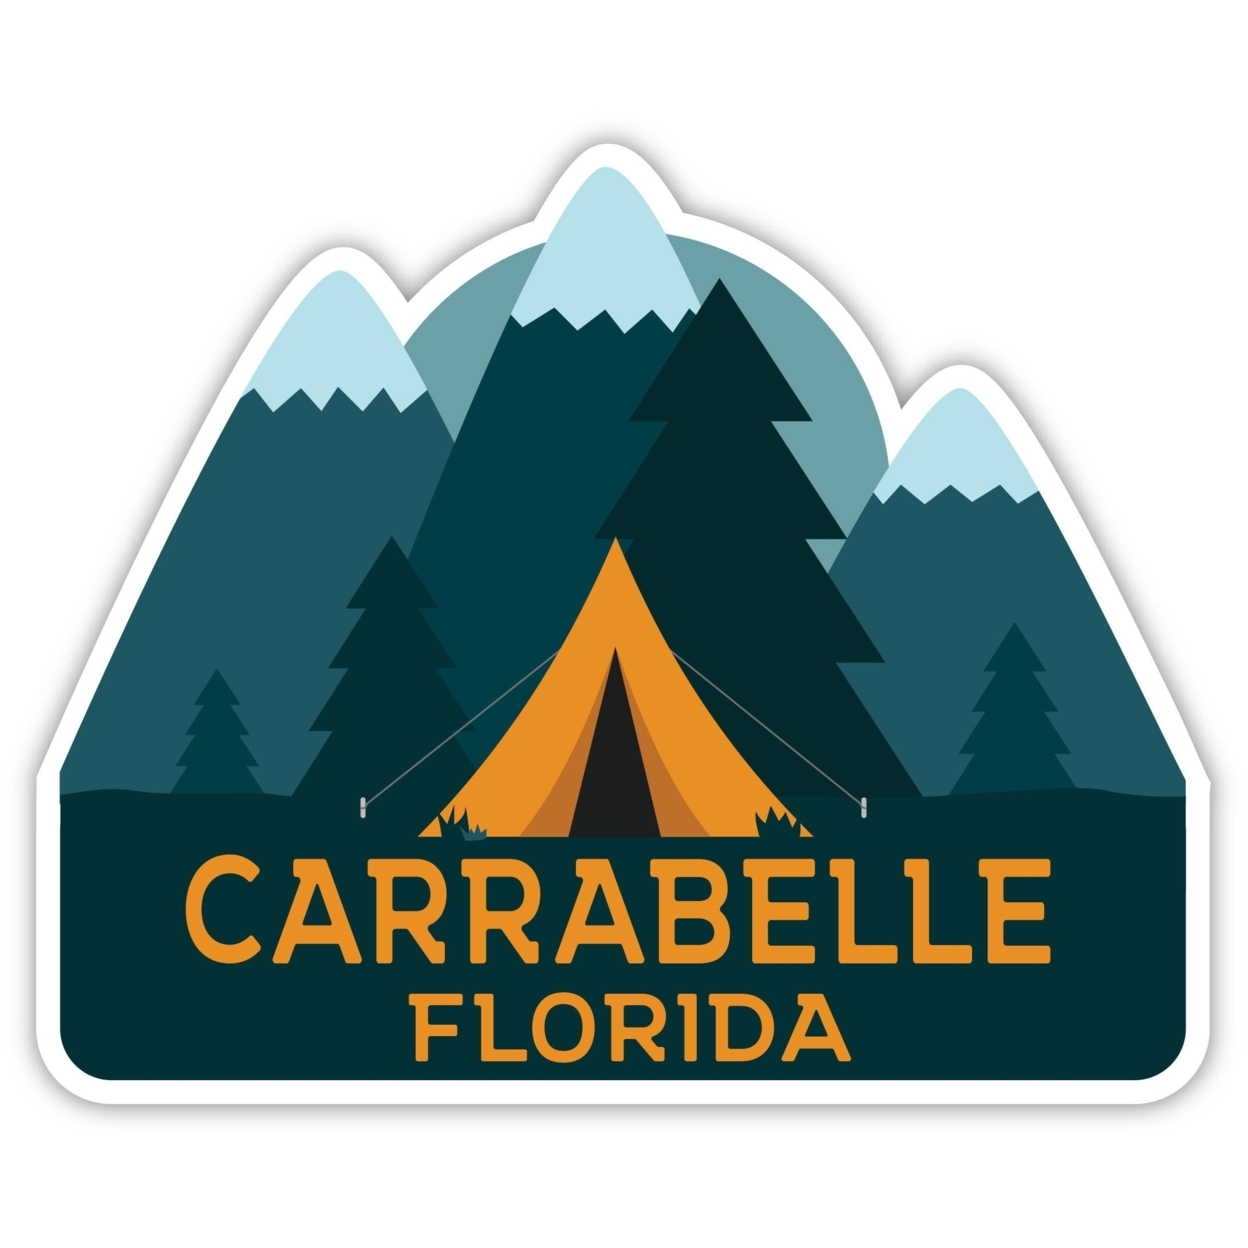 Carrabelle Florida Souvenir Decorative Stickers (Choose Theme And Size) - Single Unit, 4-Inch, Tent